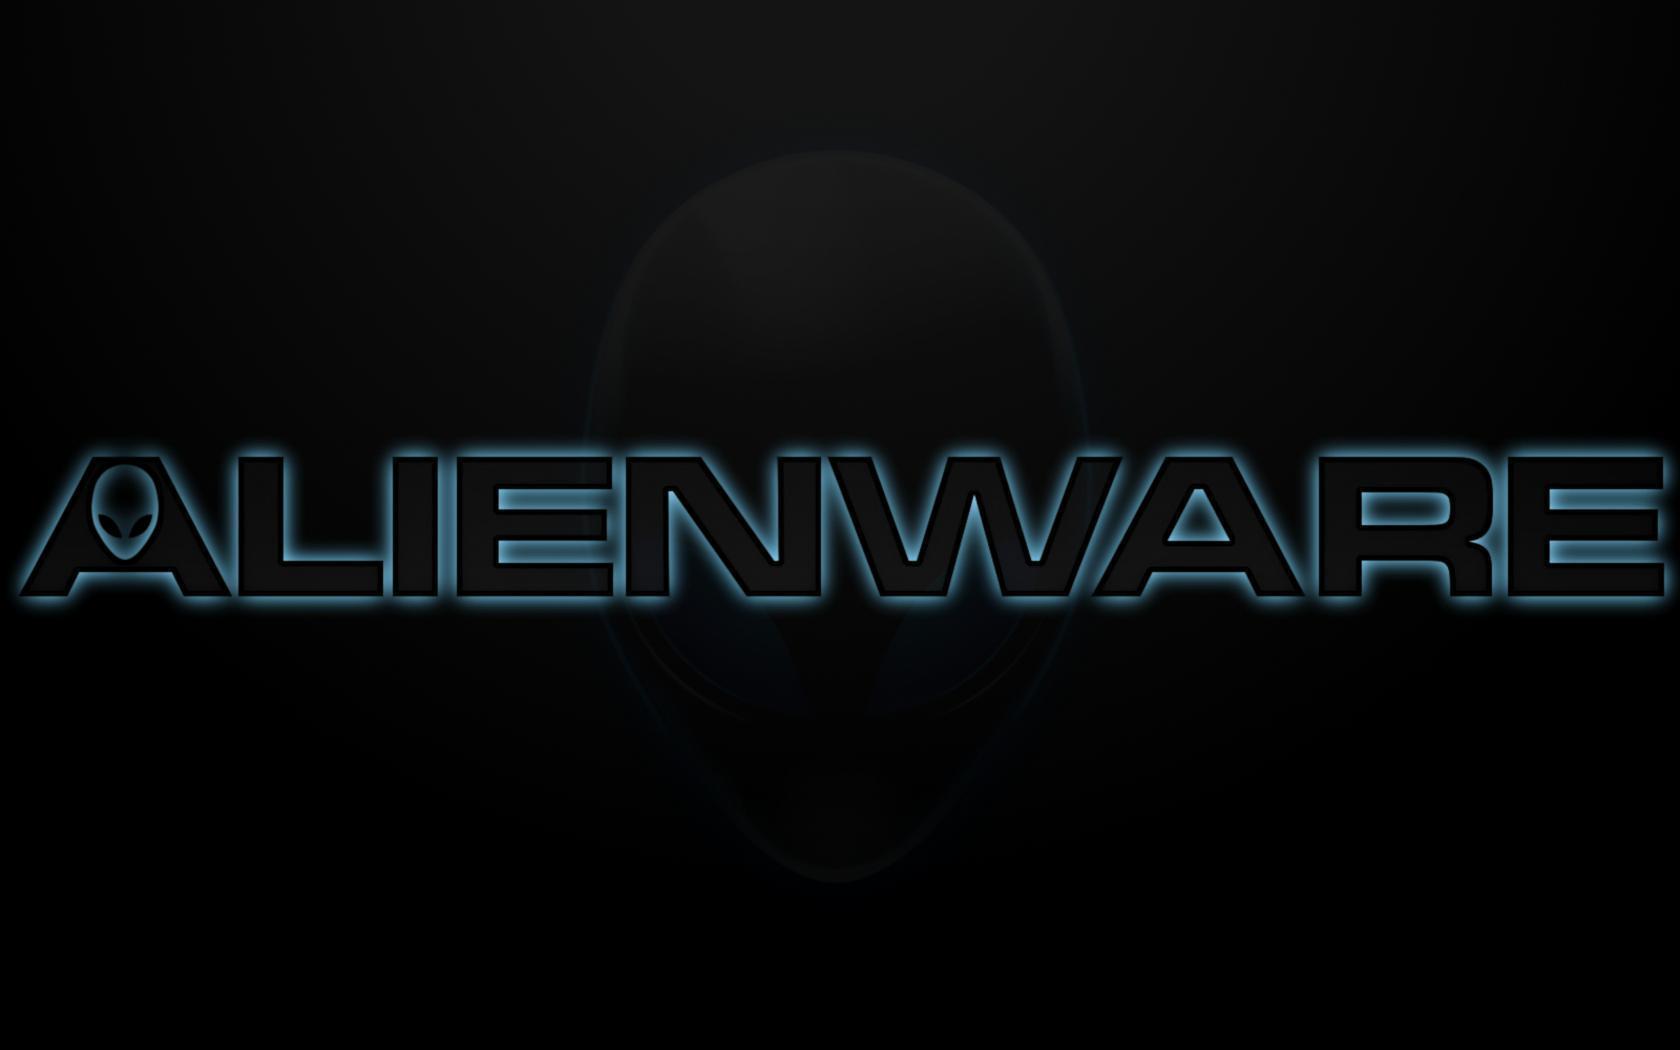 Alienware Wallpaper